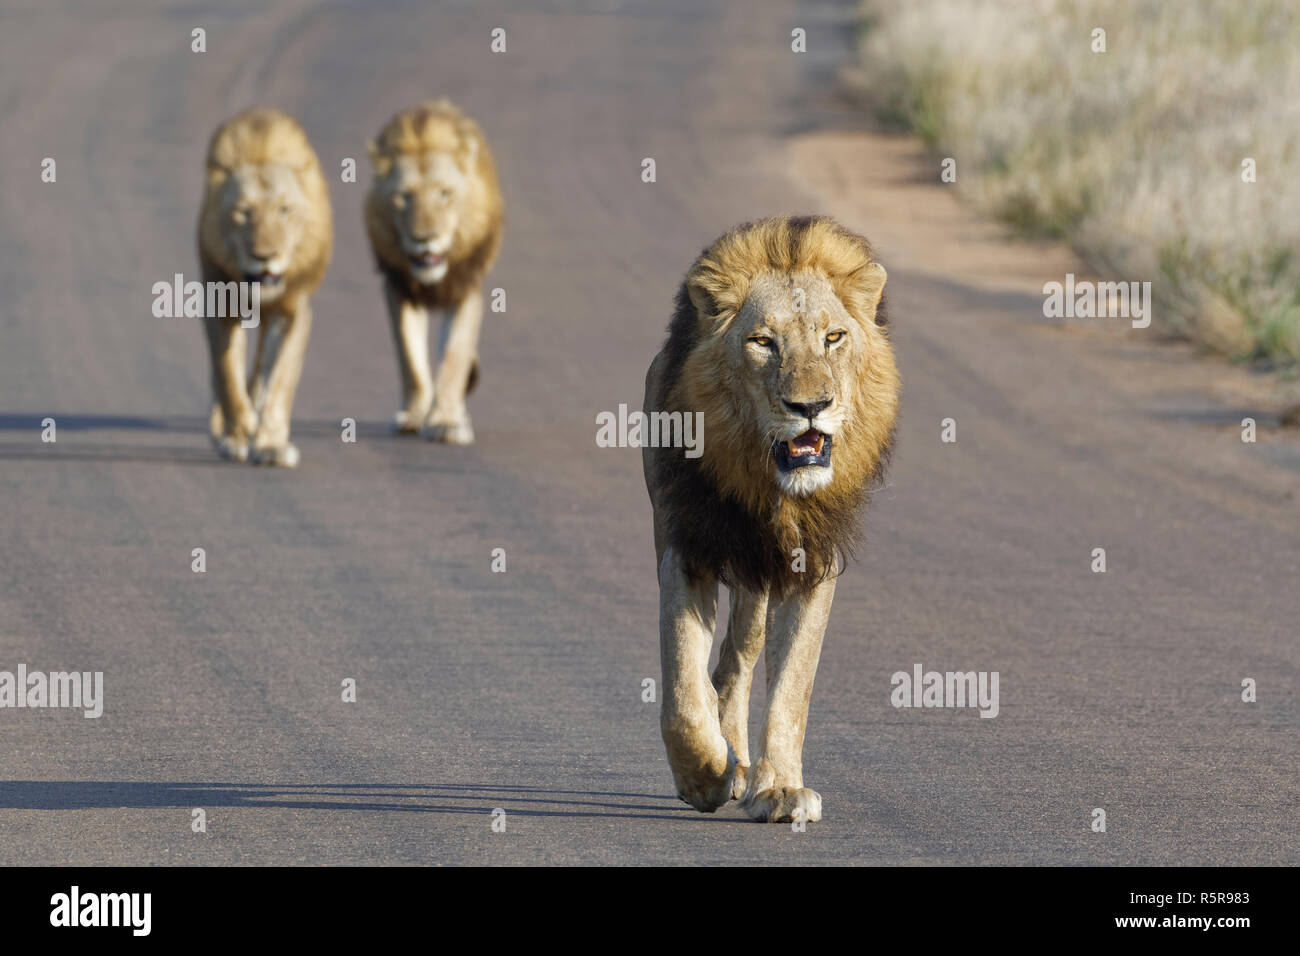 Afrikanische Löwen (Panthera leo), drei erwachsene Männer gehen auf eine Teerstraße, Krüger Nationalpark, Südafrika, Afrika Stockfoto